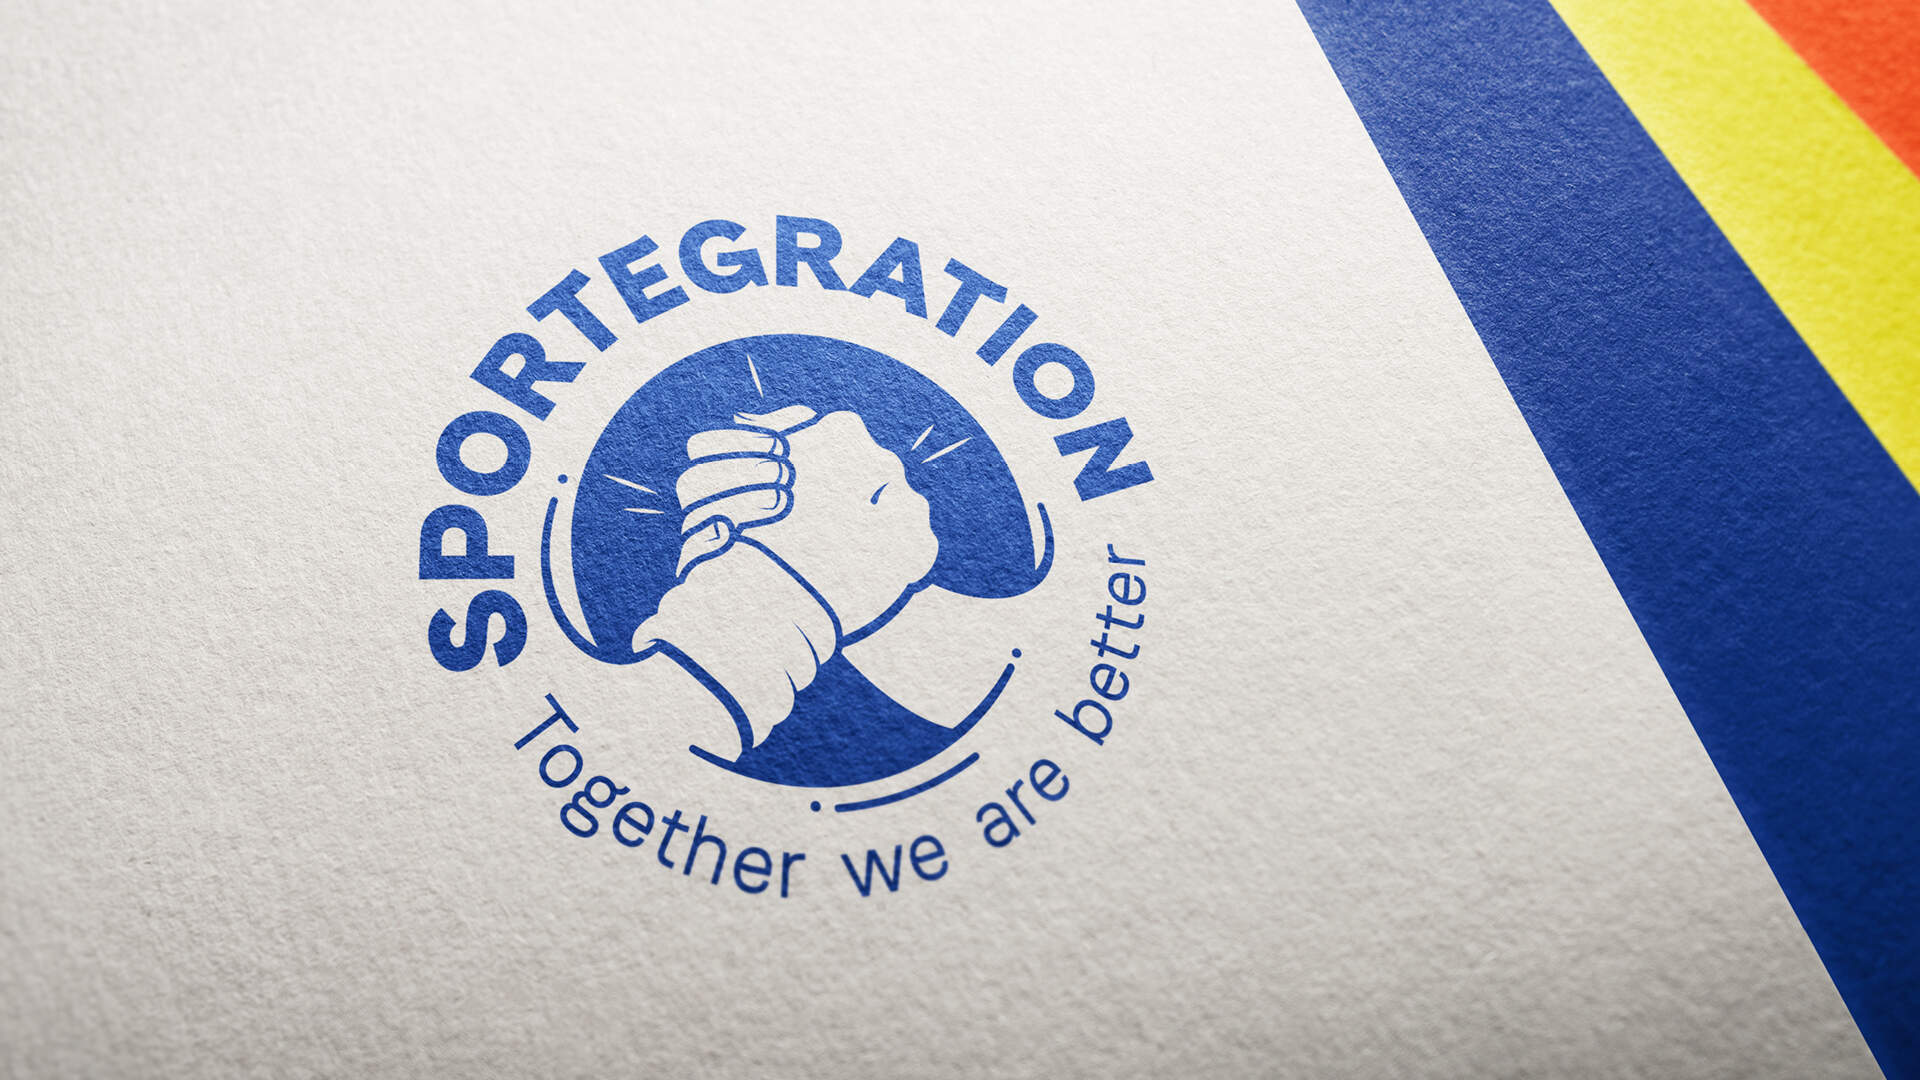 http://www.d-a-d.ch/verein-sportegration-redesign